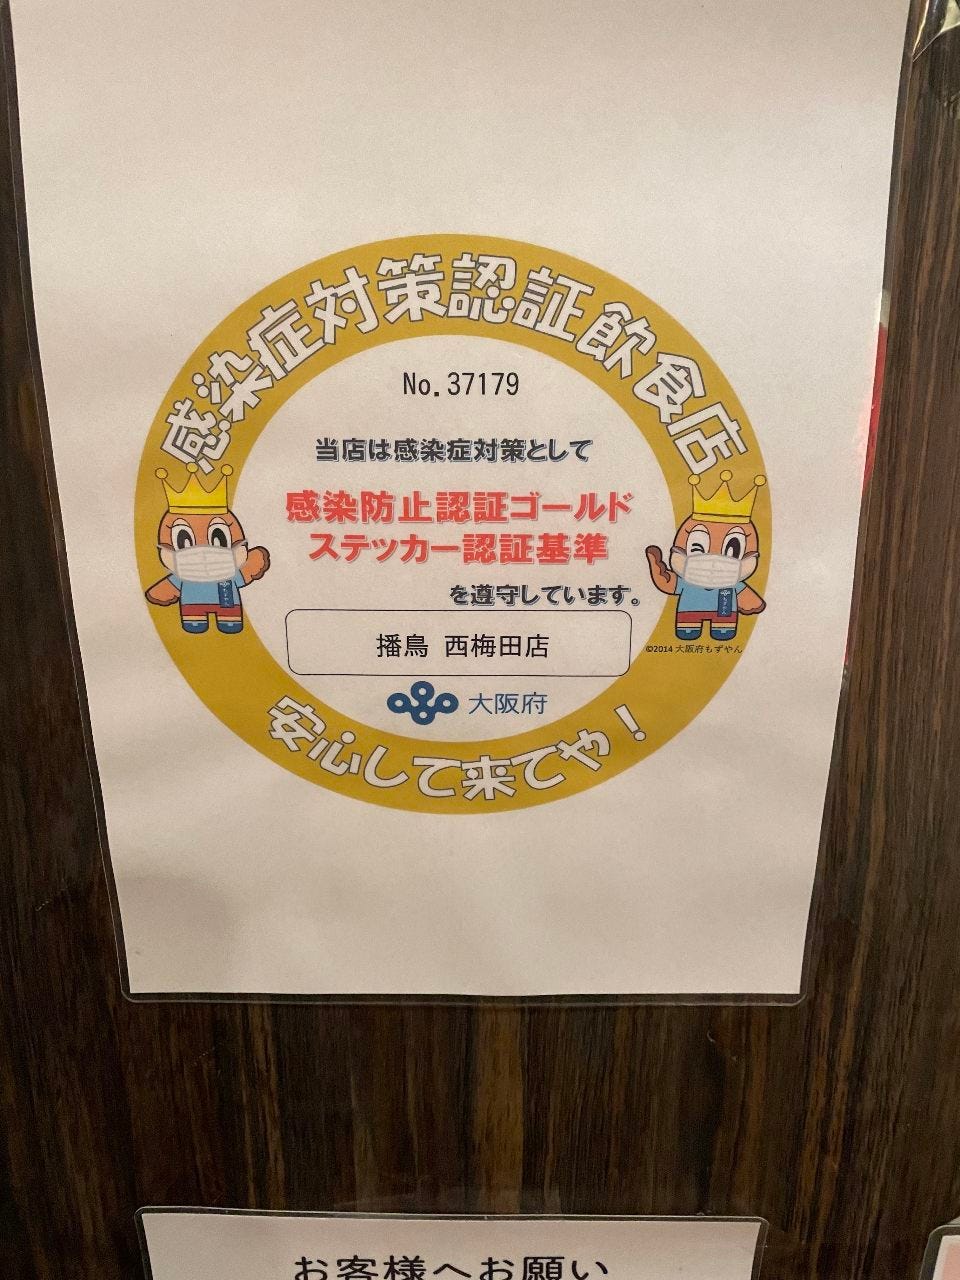 当店は、大阪府「感染防止宣言ゴールドステッカー」発行店です。